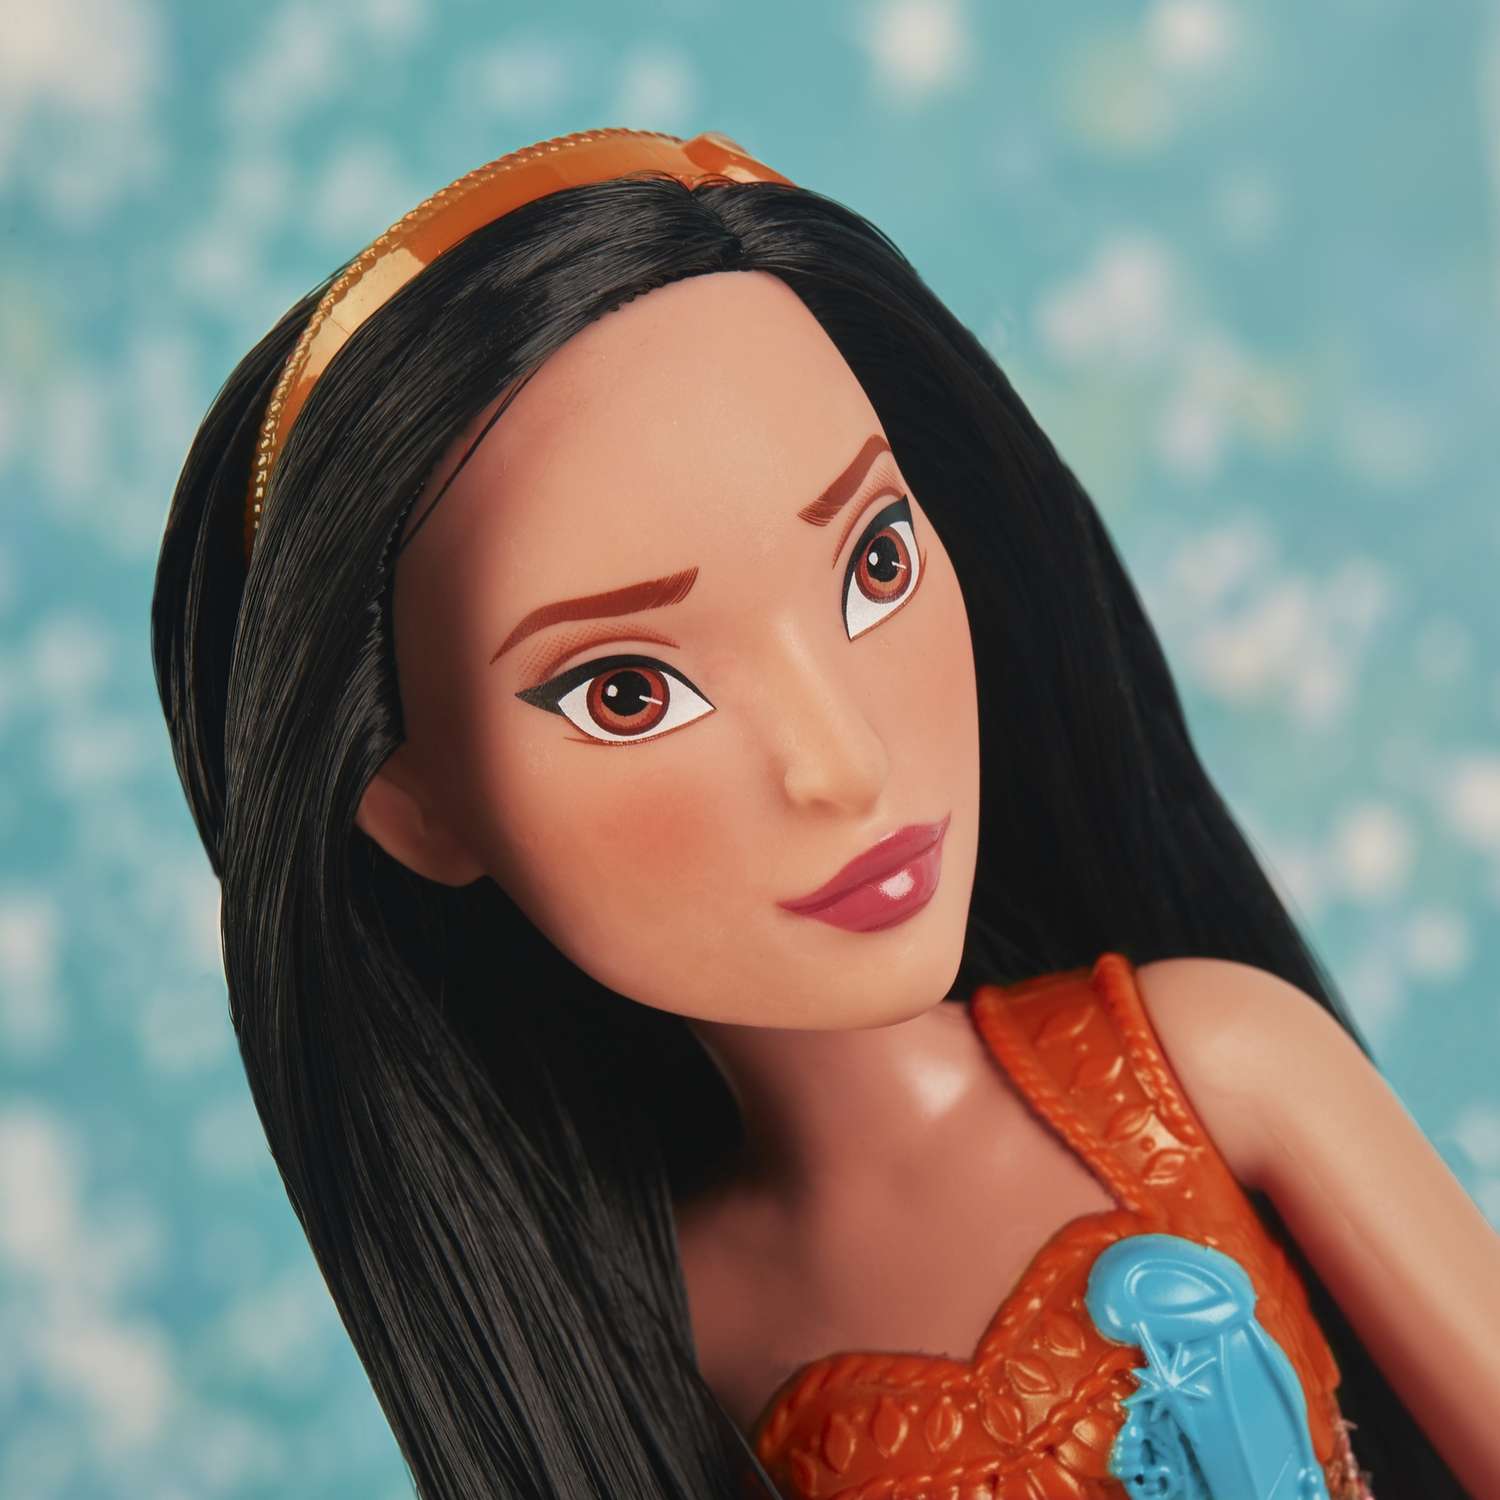 Кукла Disney Princess Hasbro C Покахонтас E4165EU4 E4022EU4 - фото 20